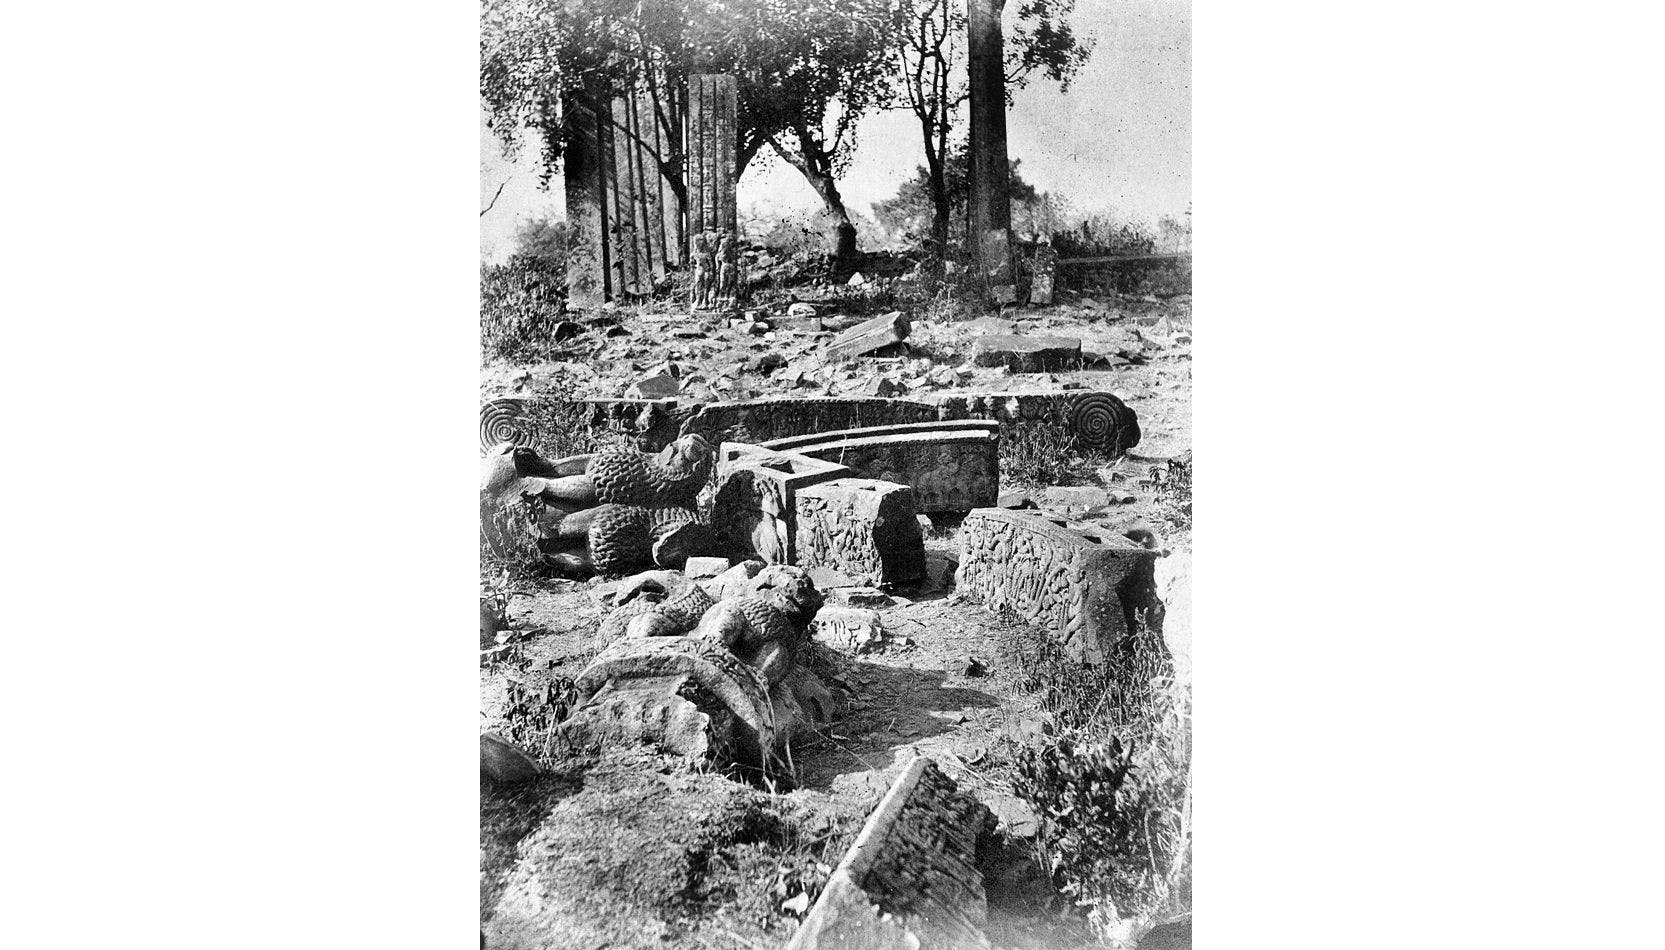 The ruins at Sanchi